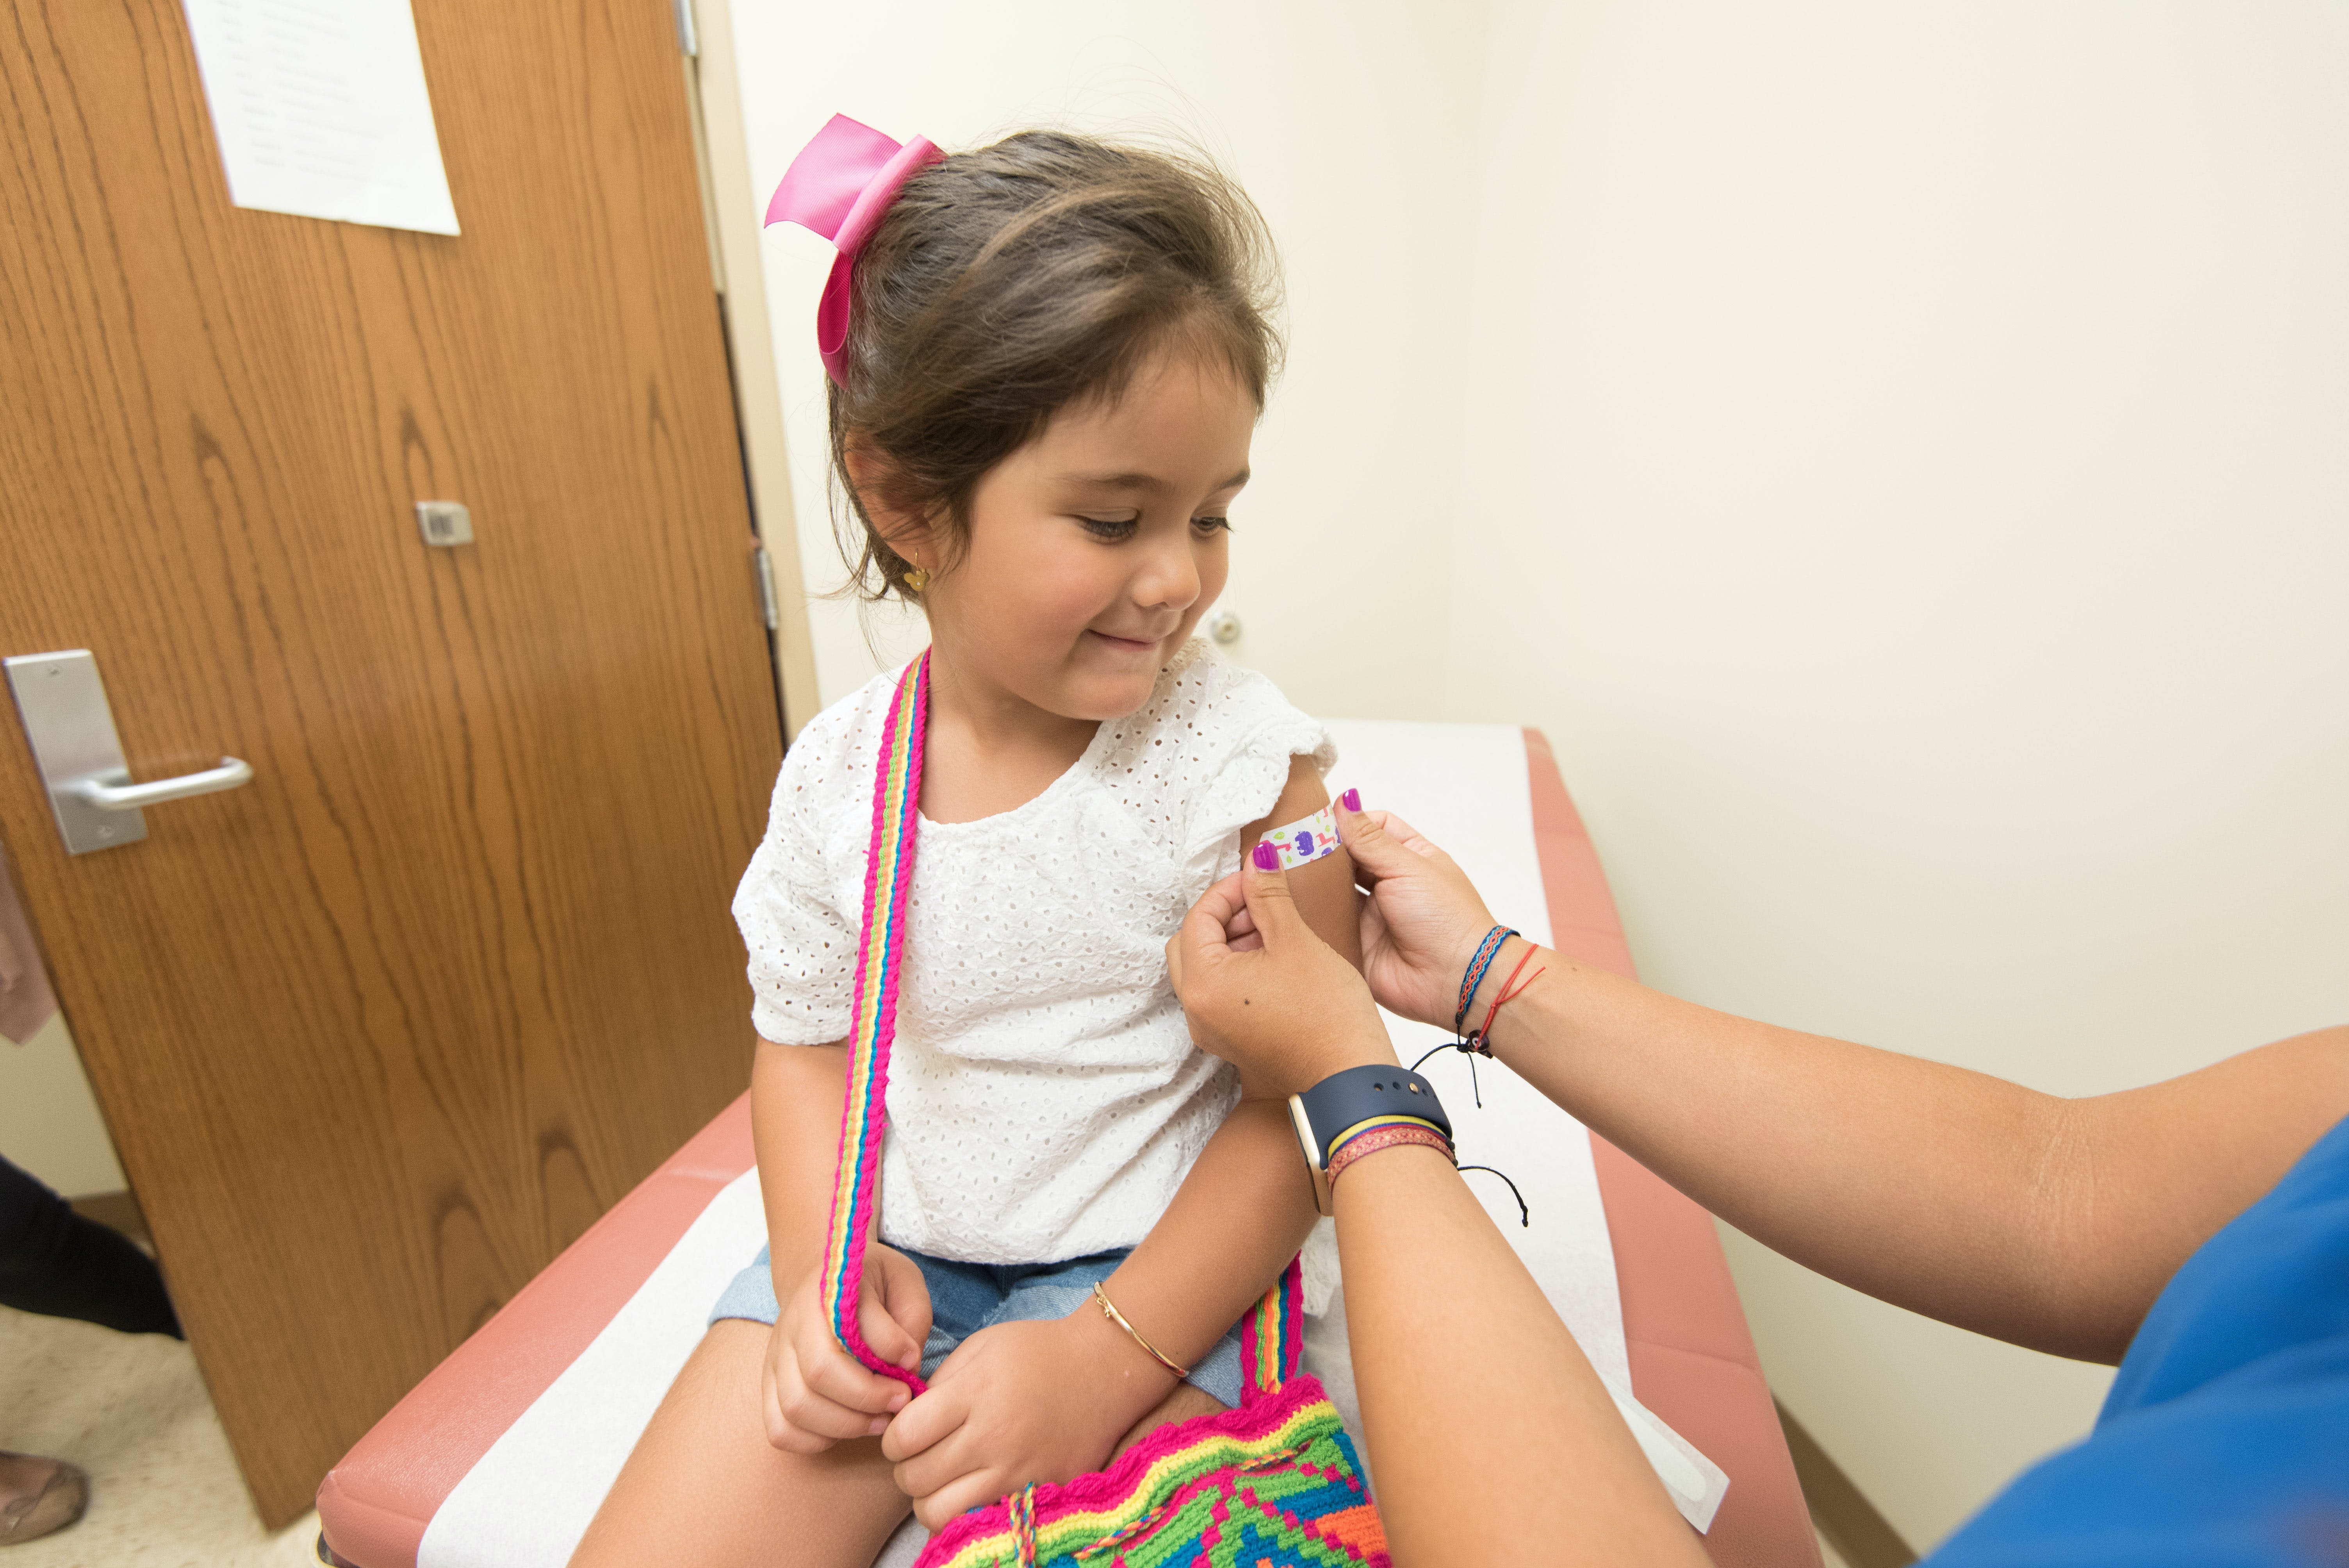 La celiaquia en els infants s’ha reduït a la meitat en deu anys per la vacuna del rotavirus